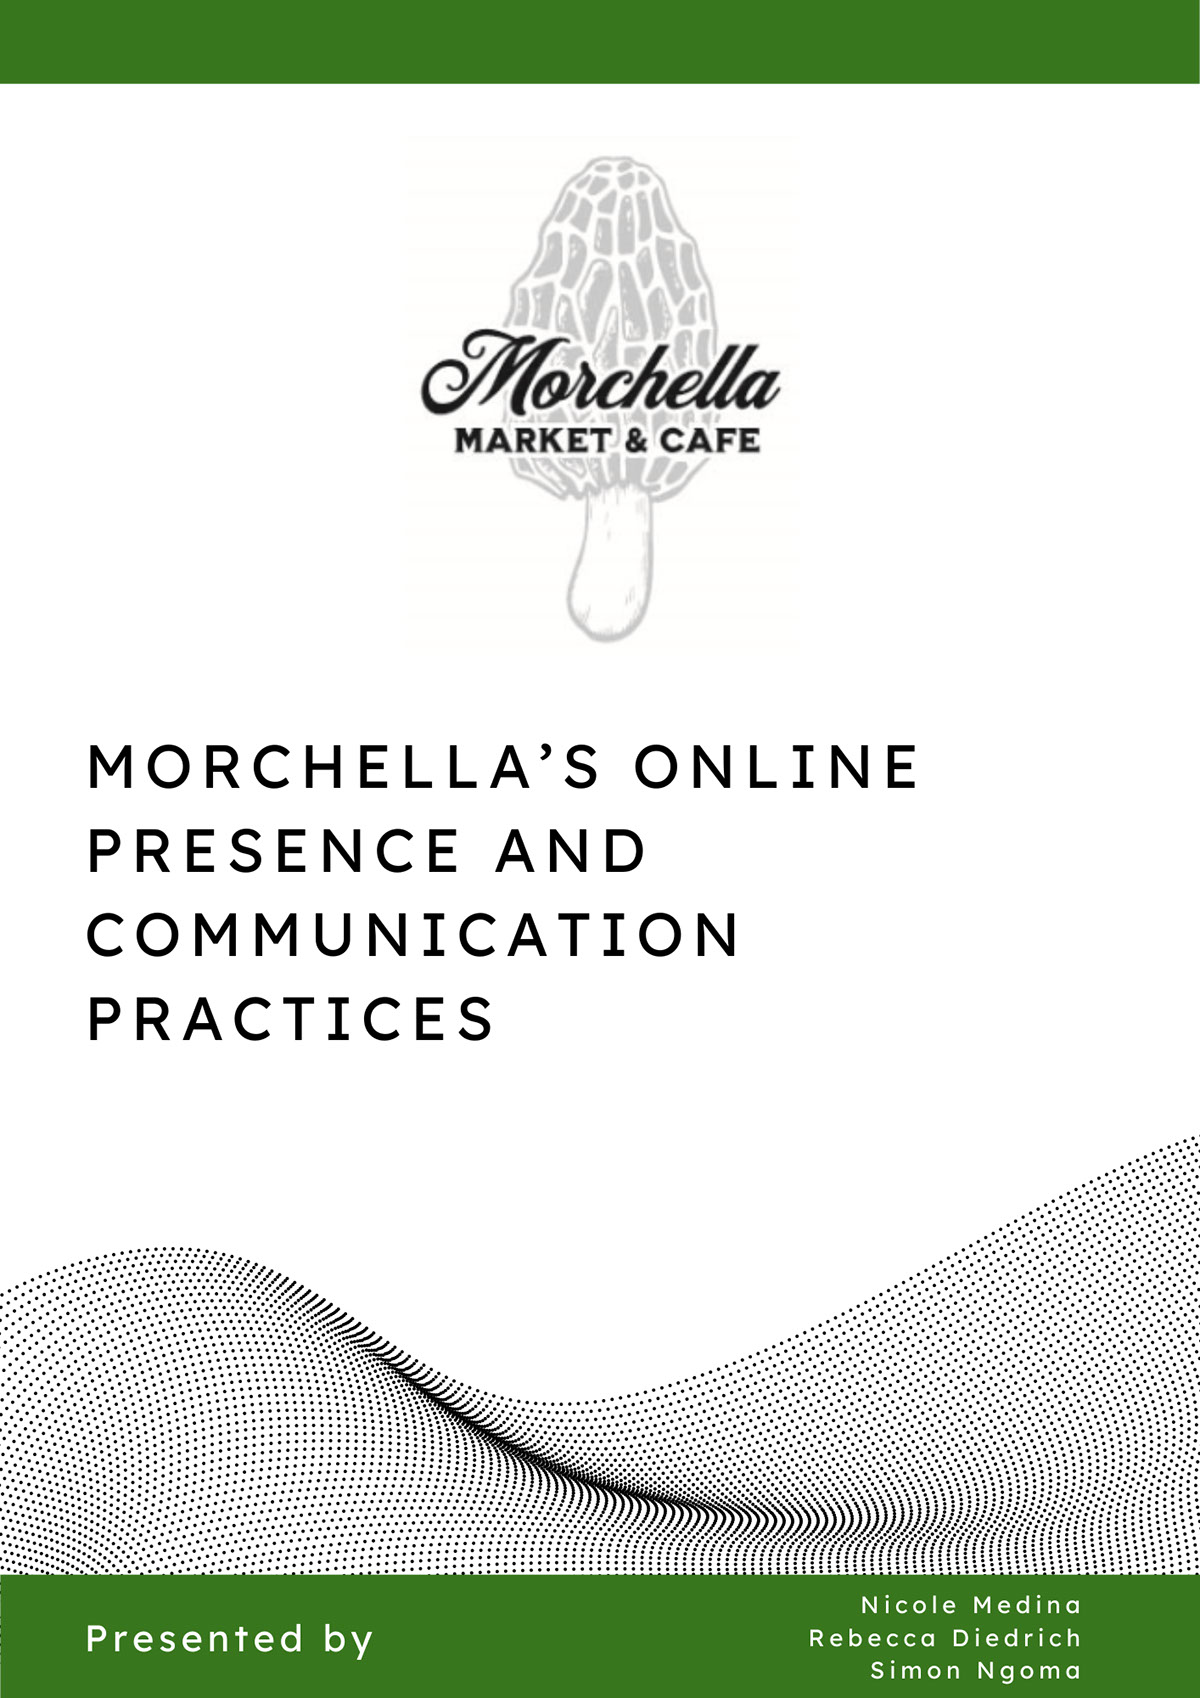 Relatorio de Praticas de Comunicacao e Presenca Digital do Morchella Market e Cafe rendition image